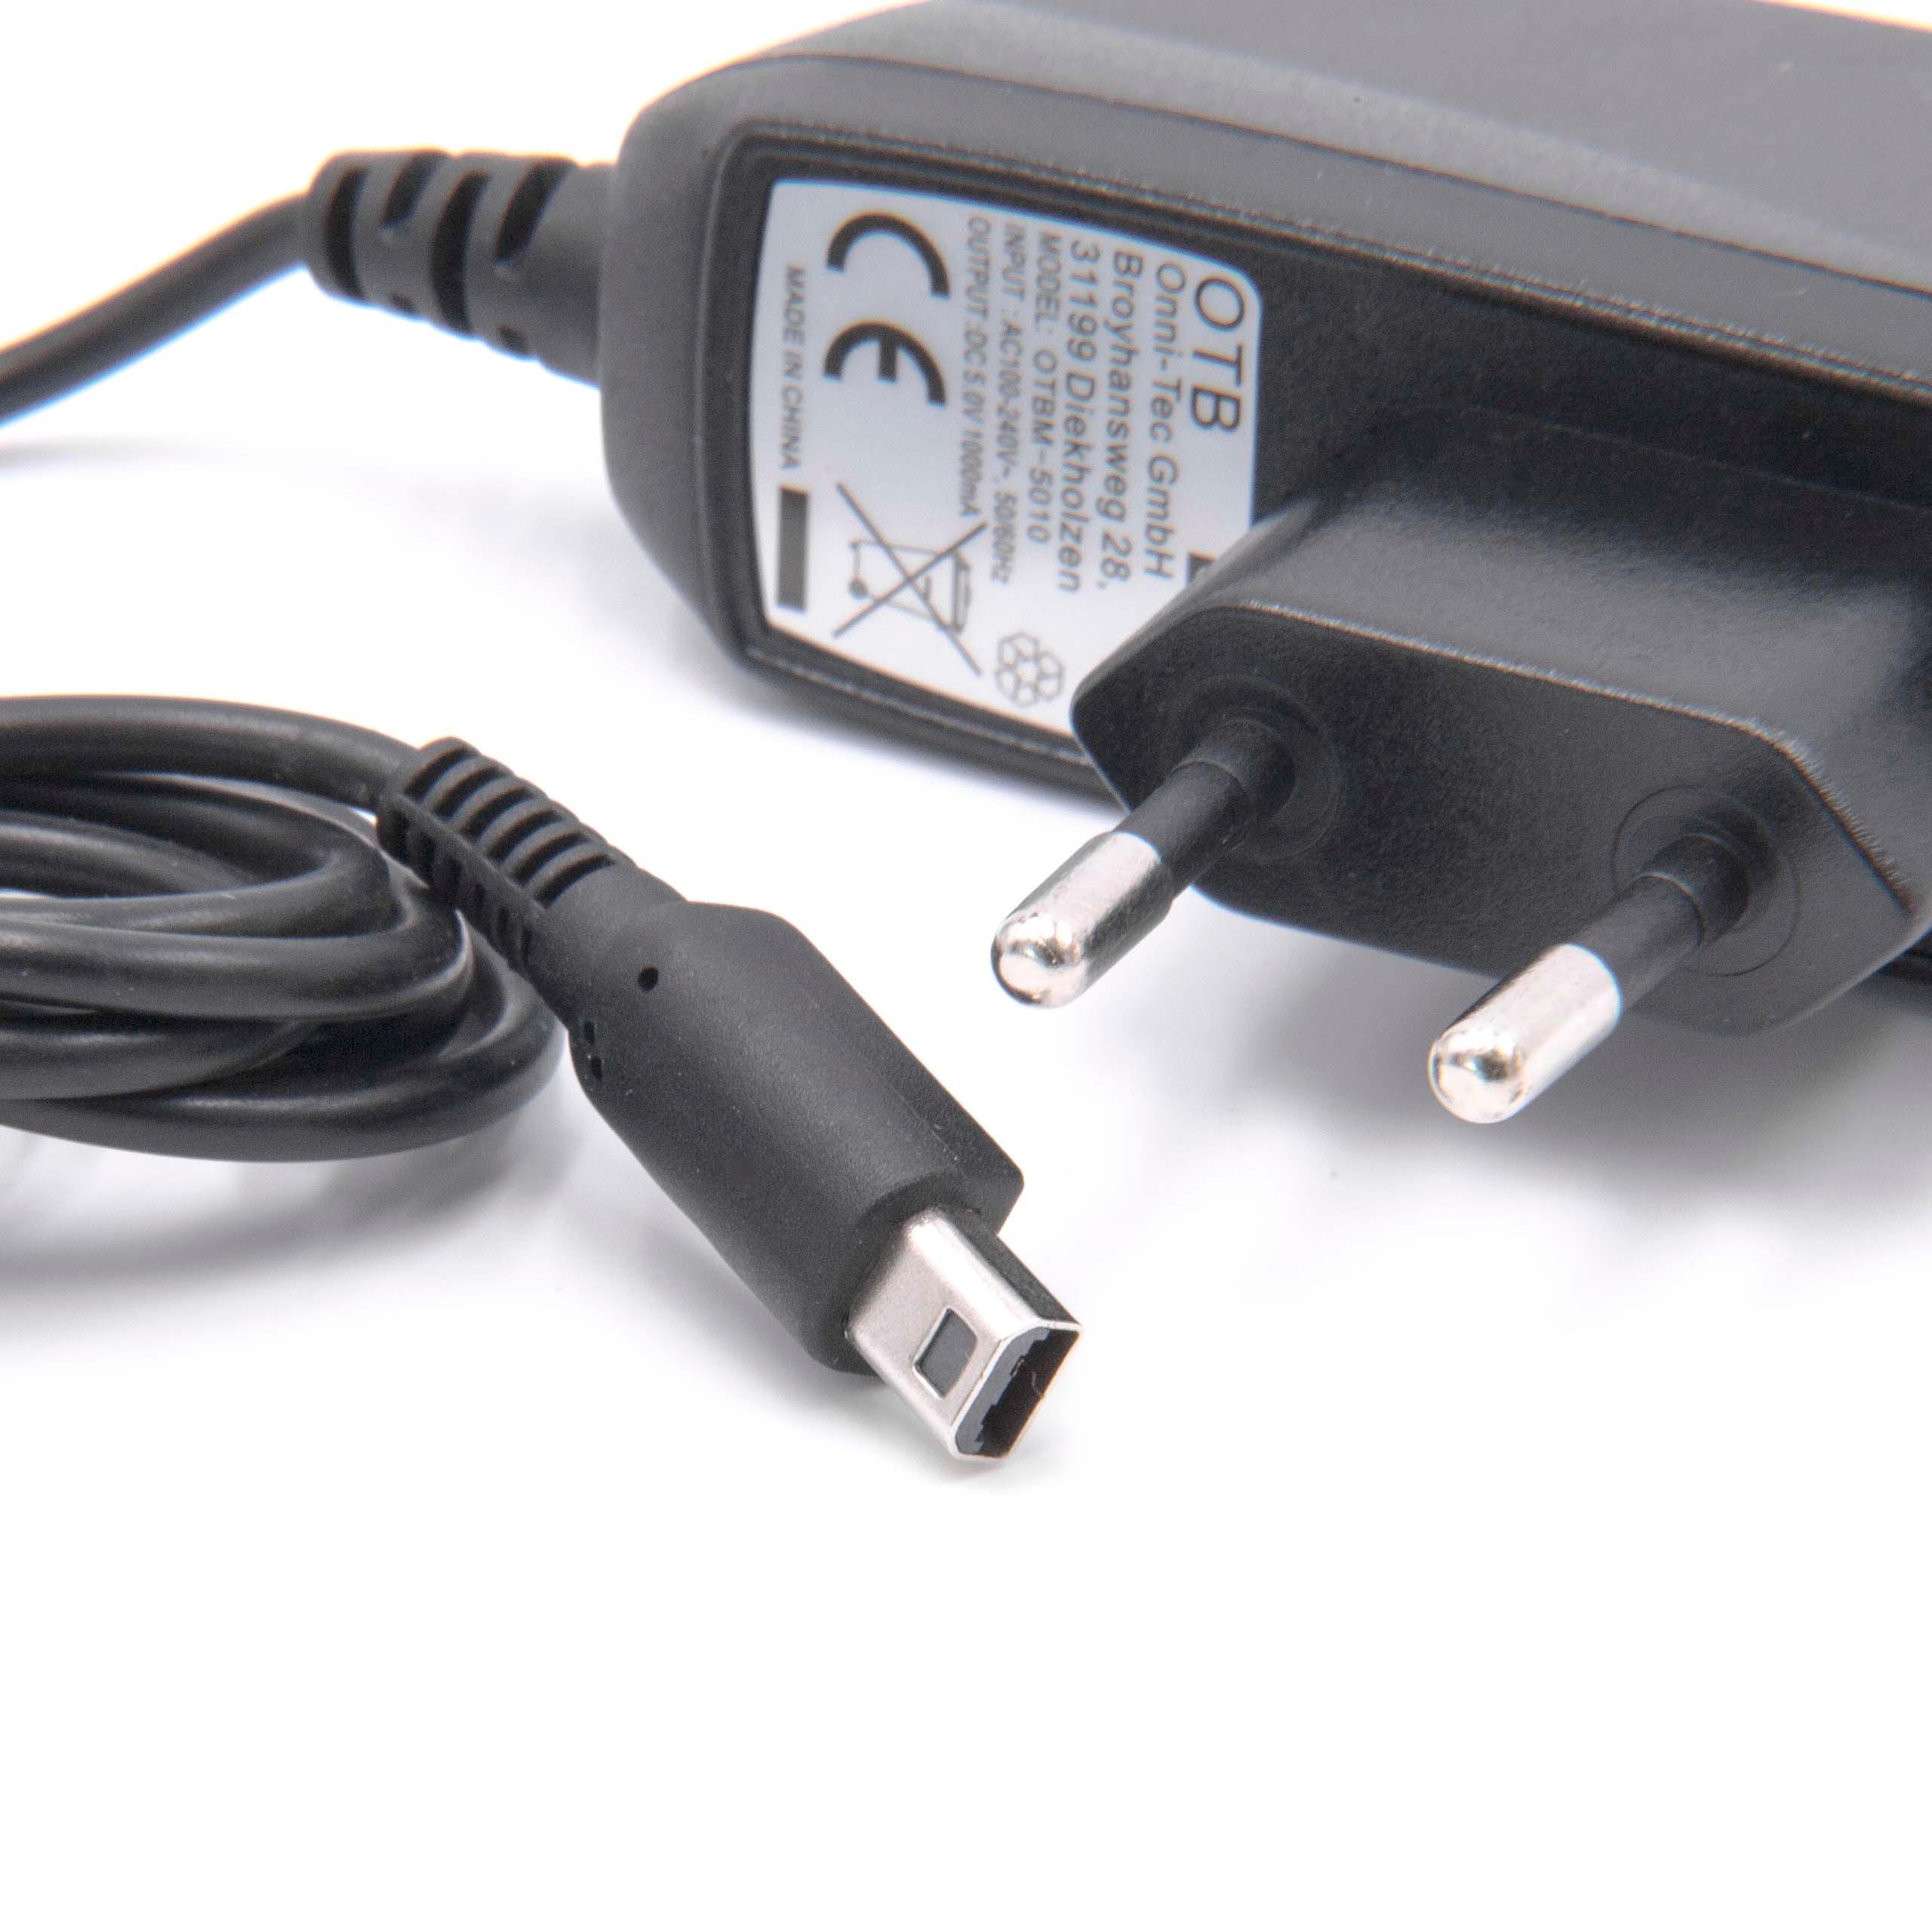 Chargeur pour console de jeux Nintendo DSi, DSi XL